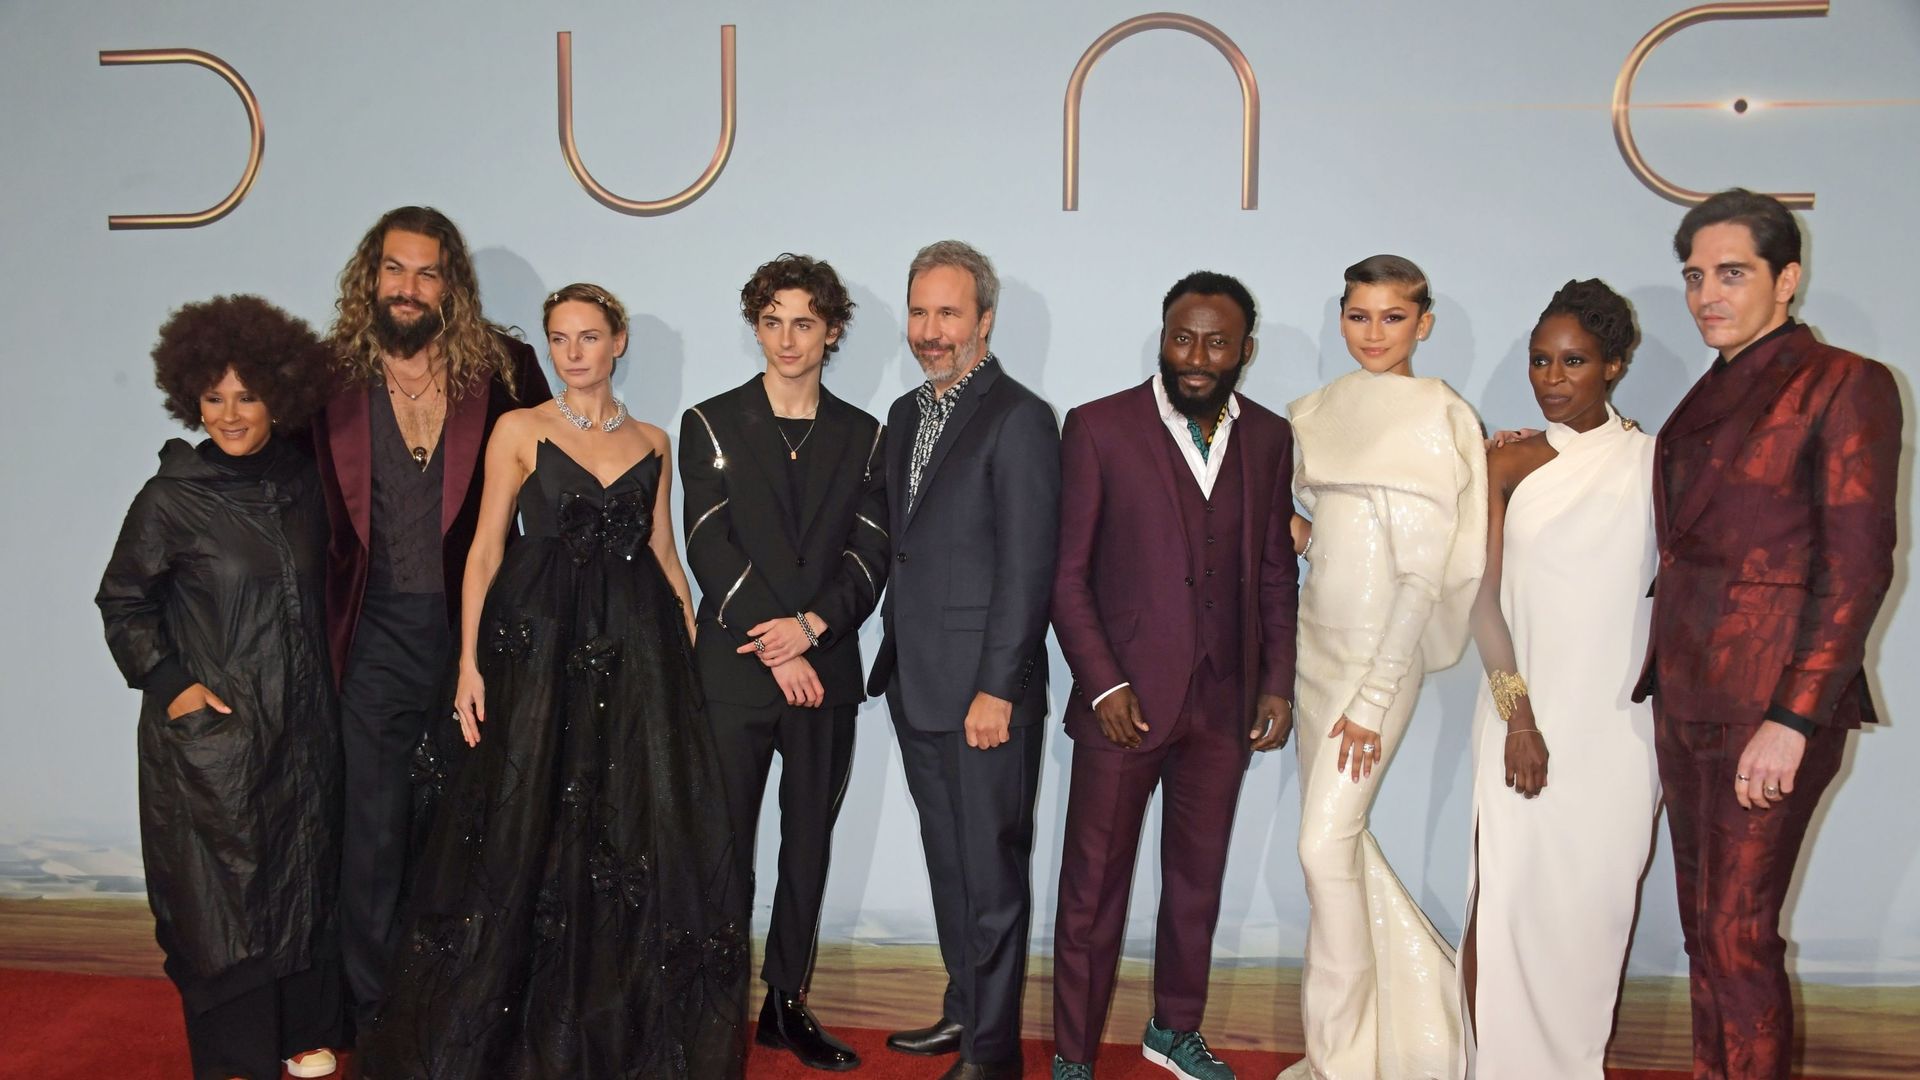 Les acteurs du film Dune lors de la projection spéciale à l'Odeon Luxe Leicester Square, le 18 octobre 2021 à Londres. 